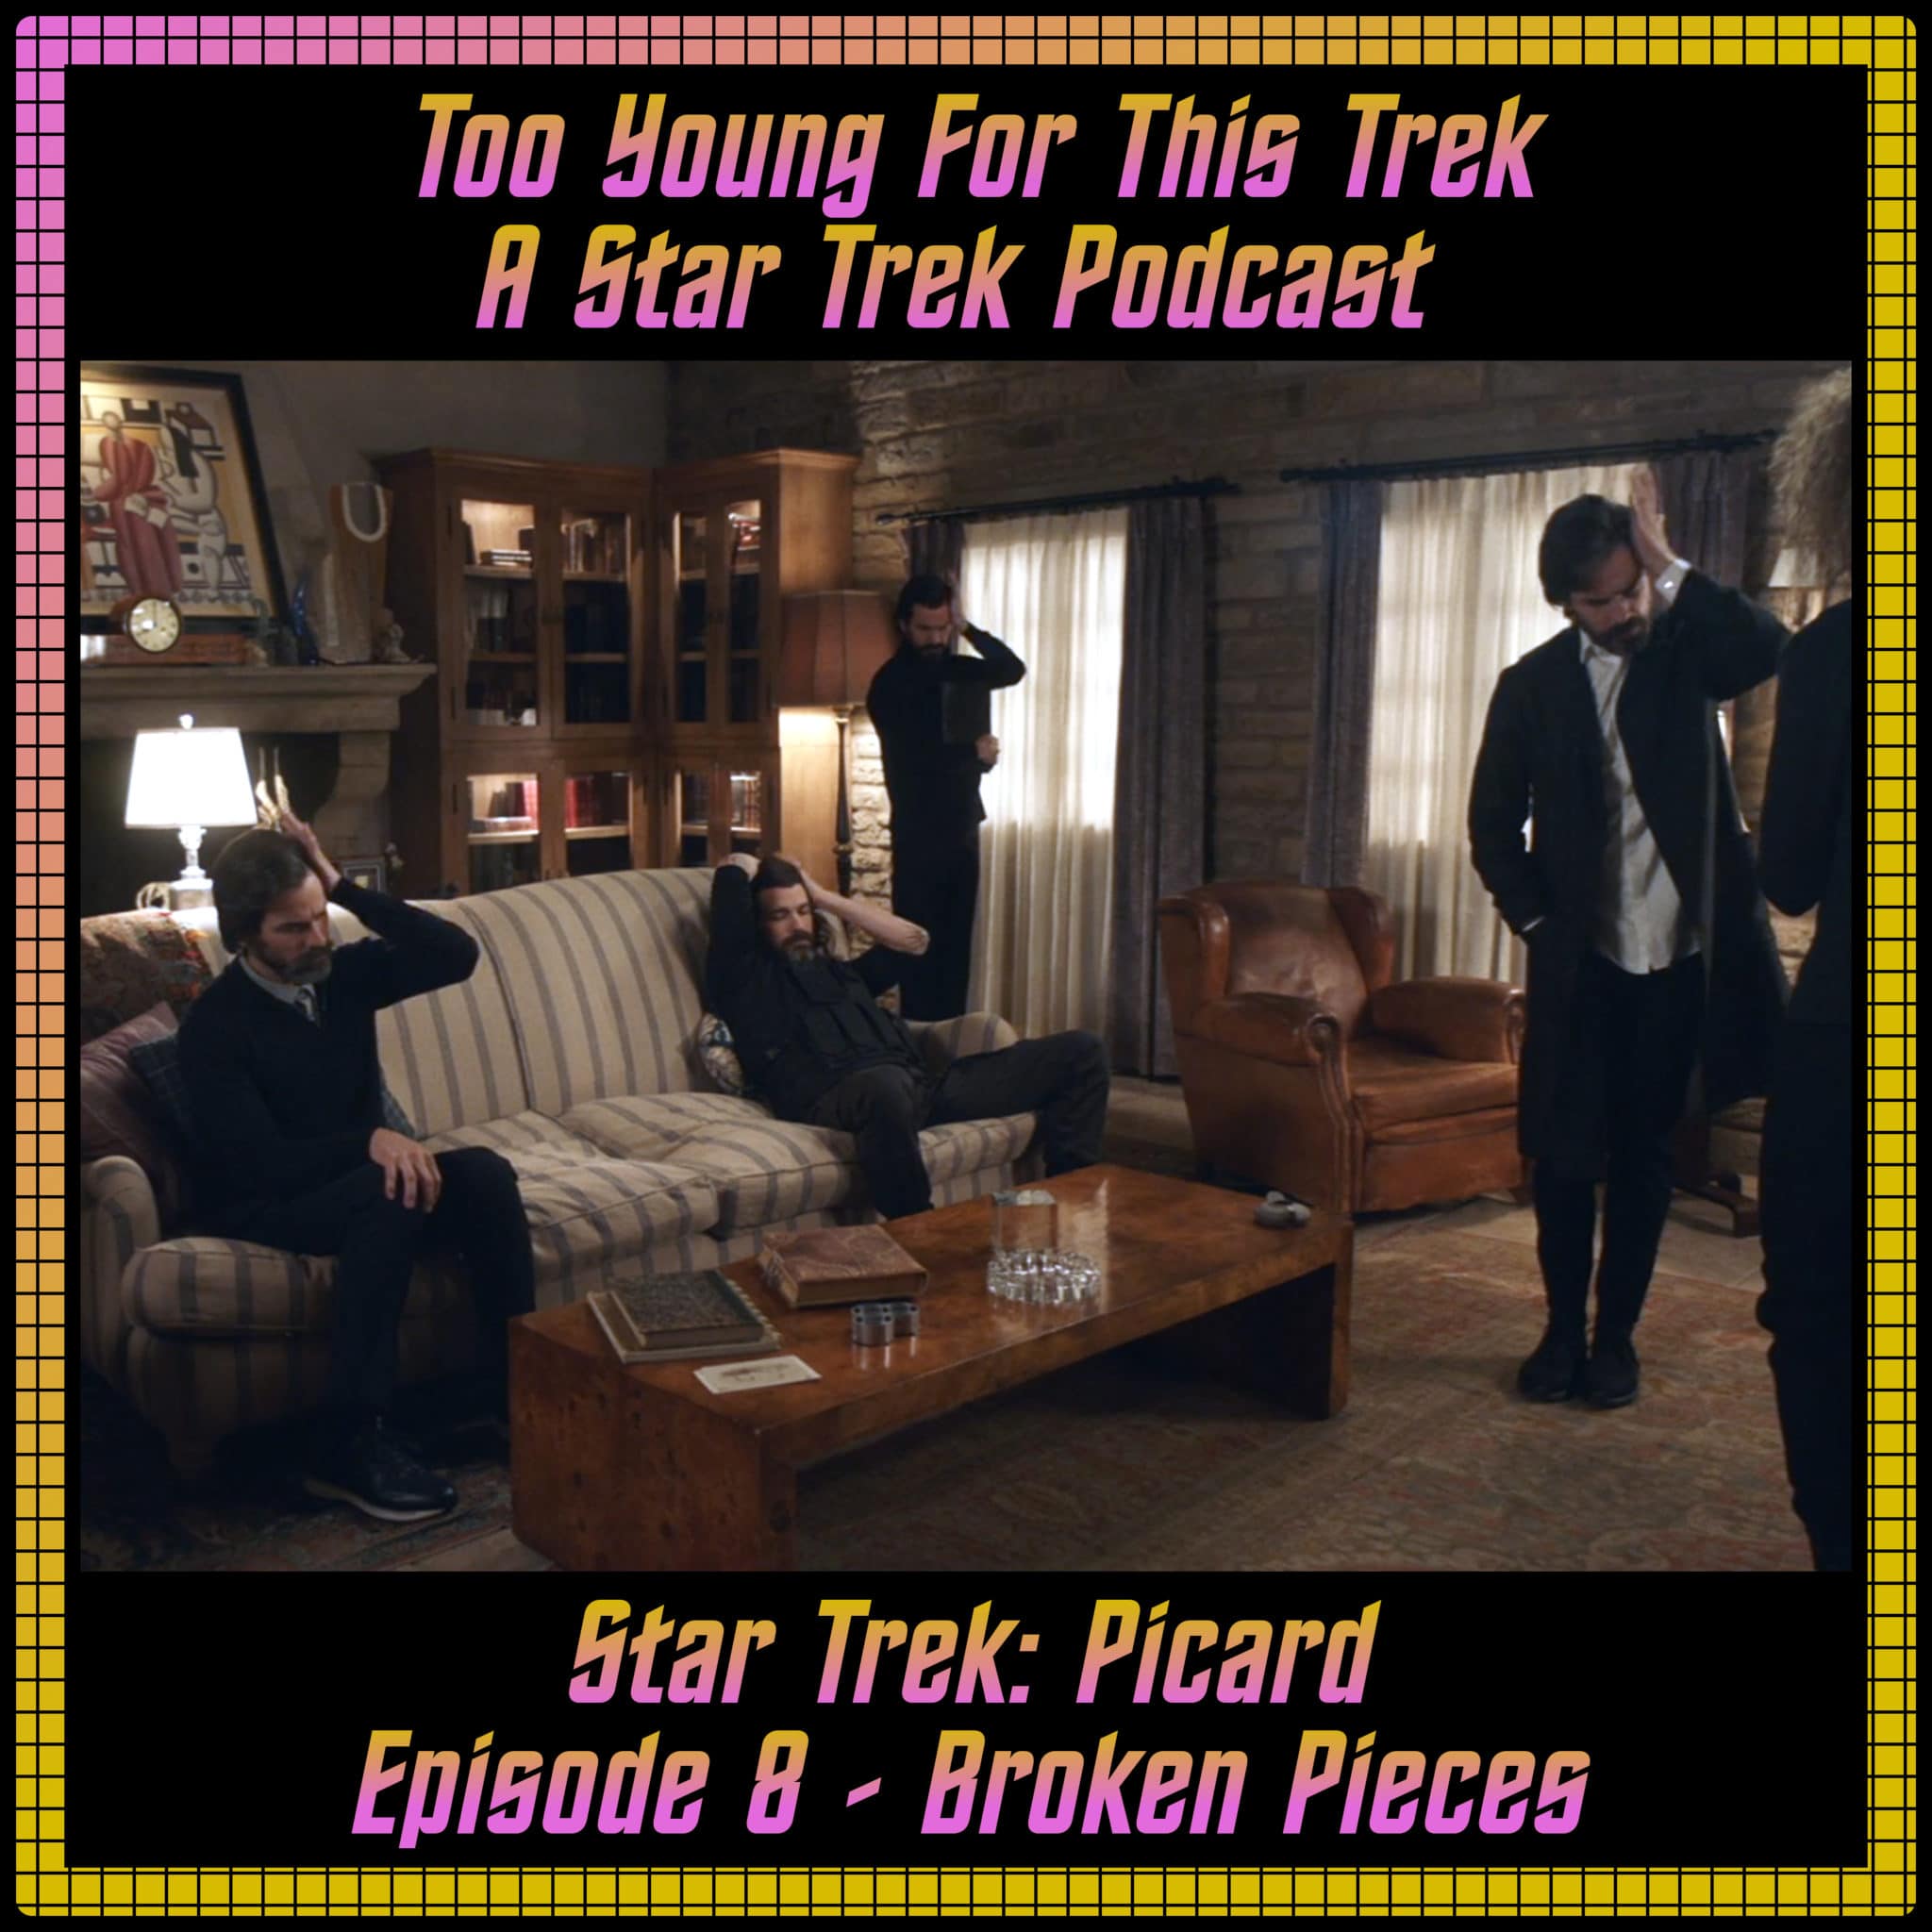 Star Trek: Picard Episode 8 - Broken Pieces- Recap